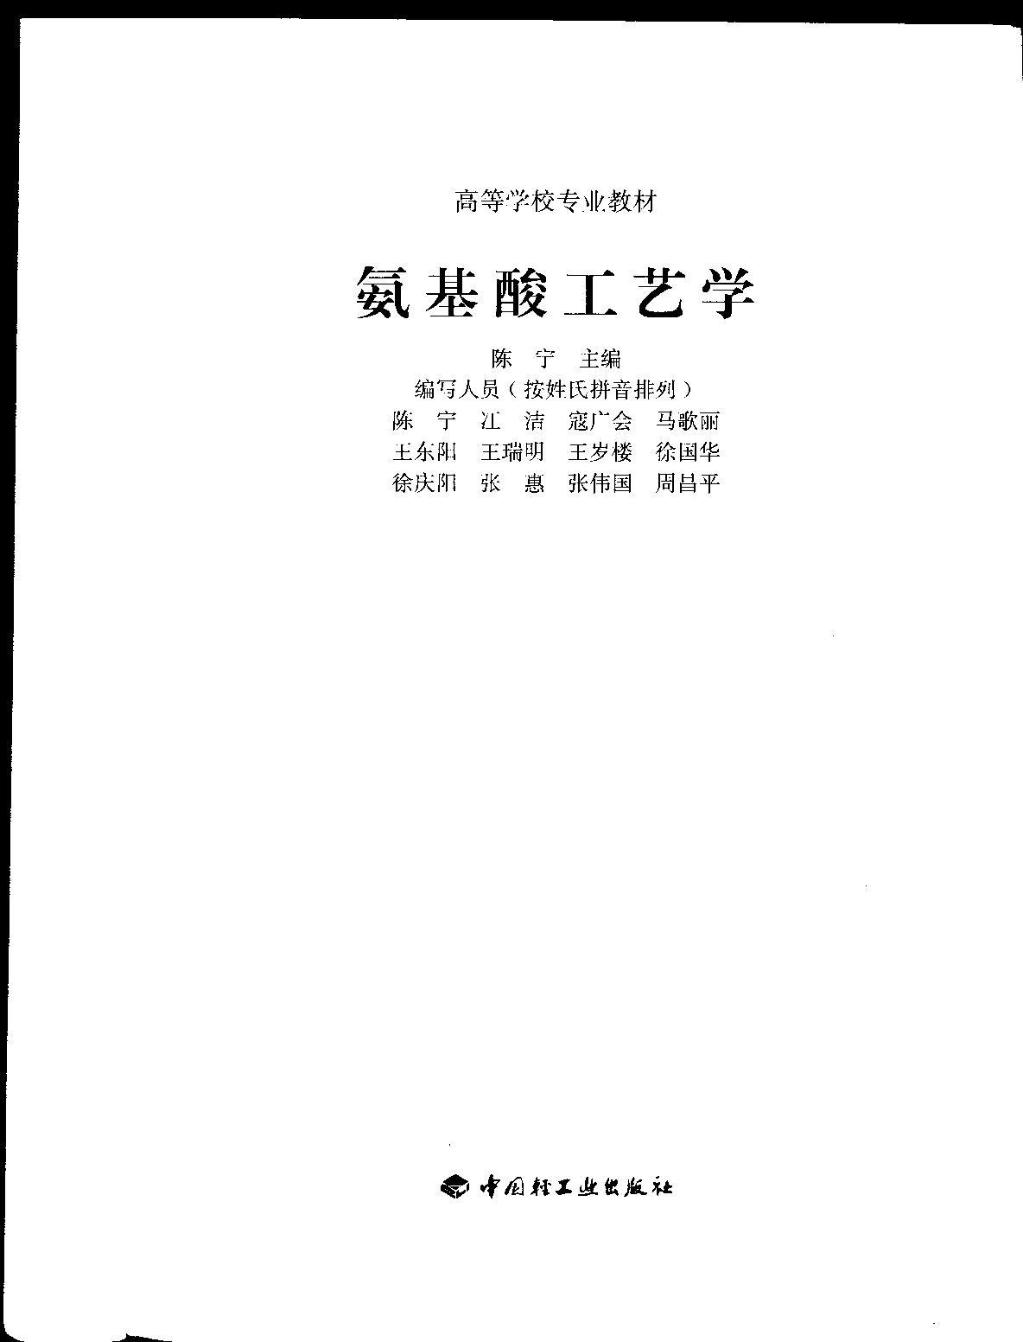 王瑞明谷氨酸工艺学书皮2007